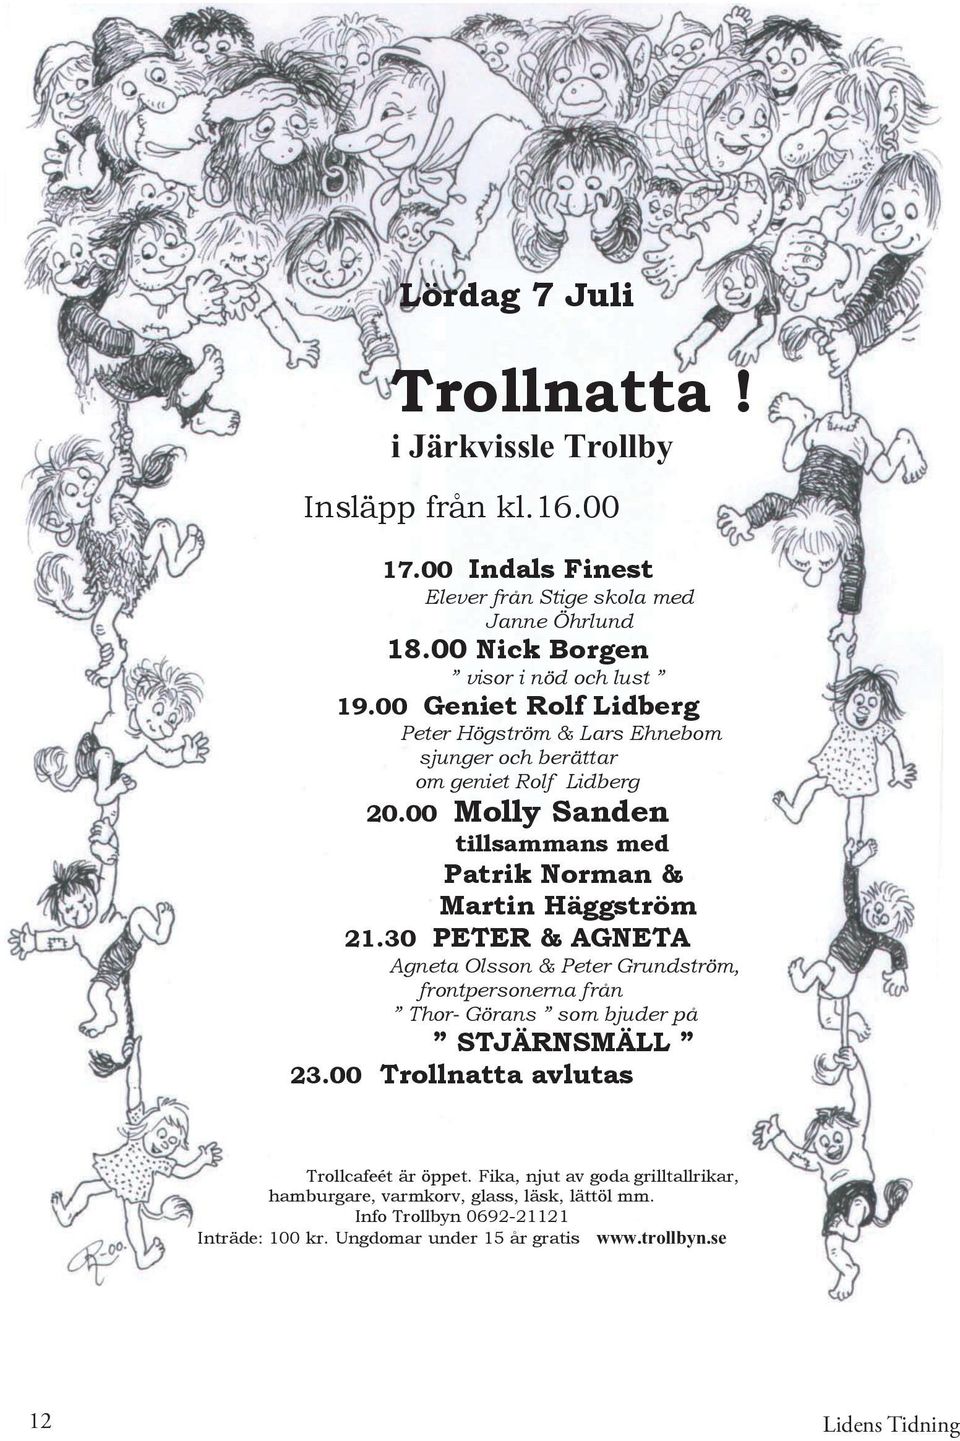 00 Molly Sanden tillsammans med Patrik Norman & Martin Häggström 21.